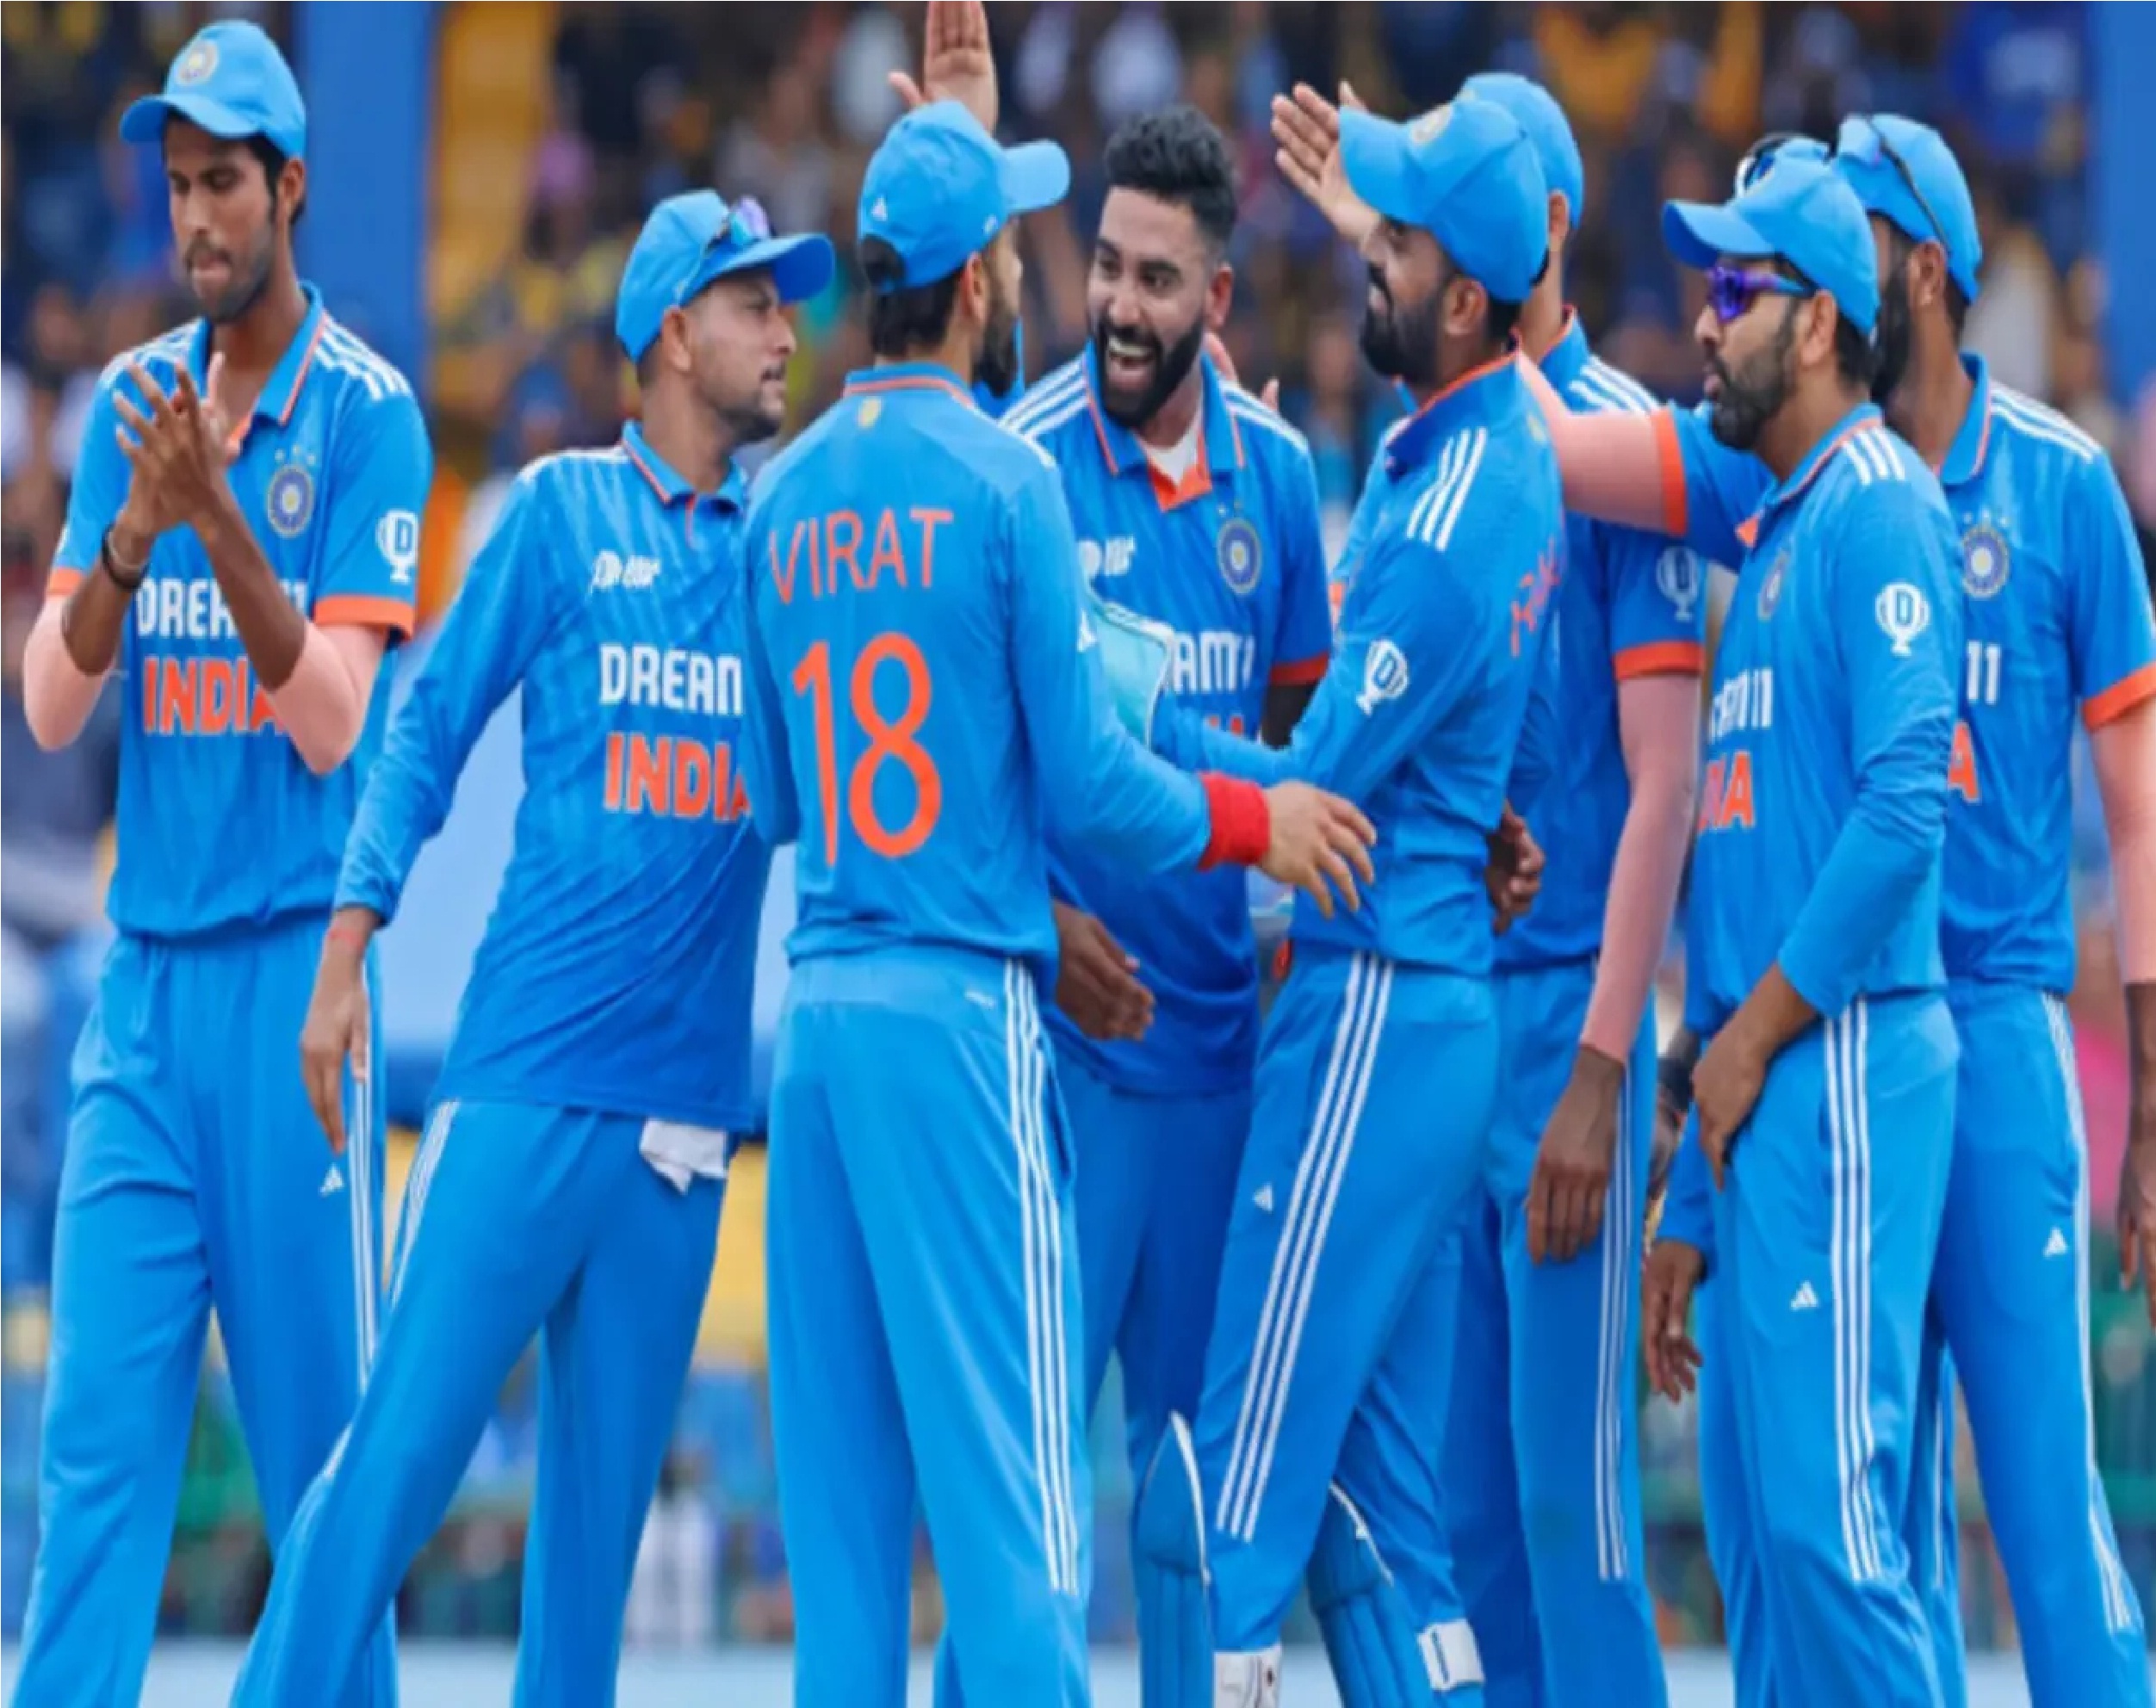 New Delhi: भारत के वर्ल्ड कप टीम में होगा 1 बदलाव? 2 खिलाड़ी के बीच टक्कर, ऑस्ट्रेलिया के खिलाफ वनडे में पेश करेंगे दावेदारी